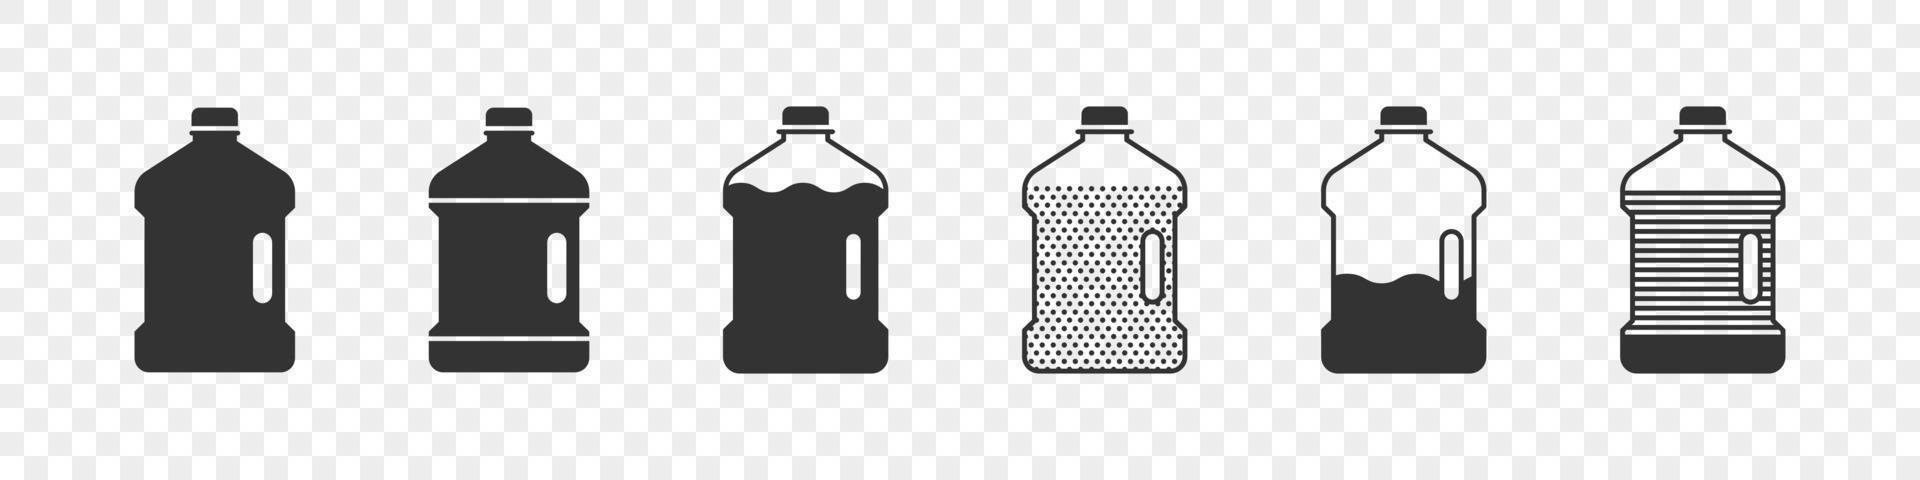 botellas de plástico. siluetas de botellas. concepto de iconos de botellas planas. ilustración vectorial vector